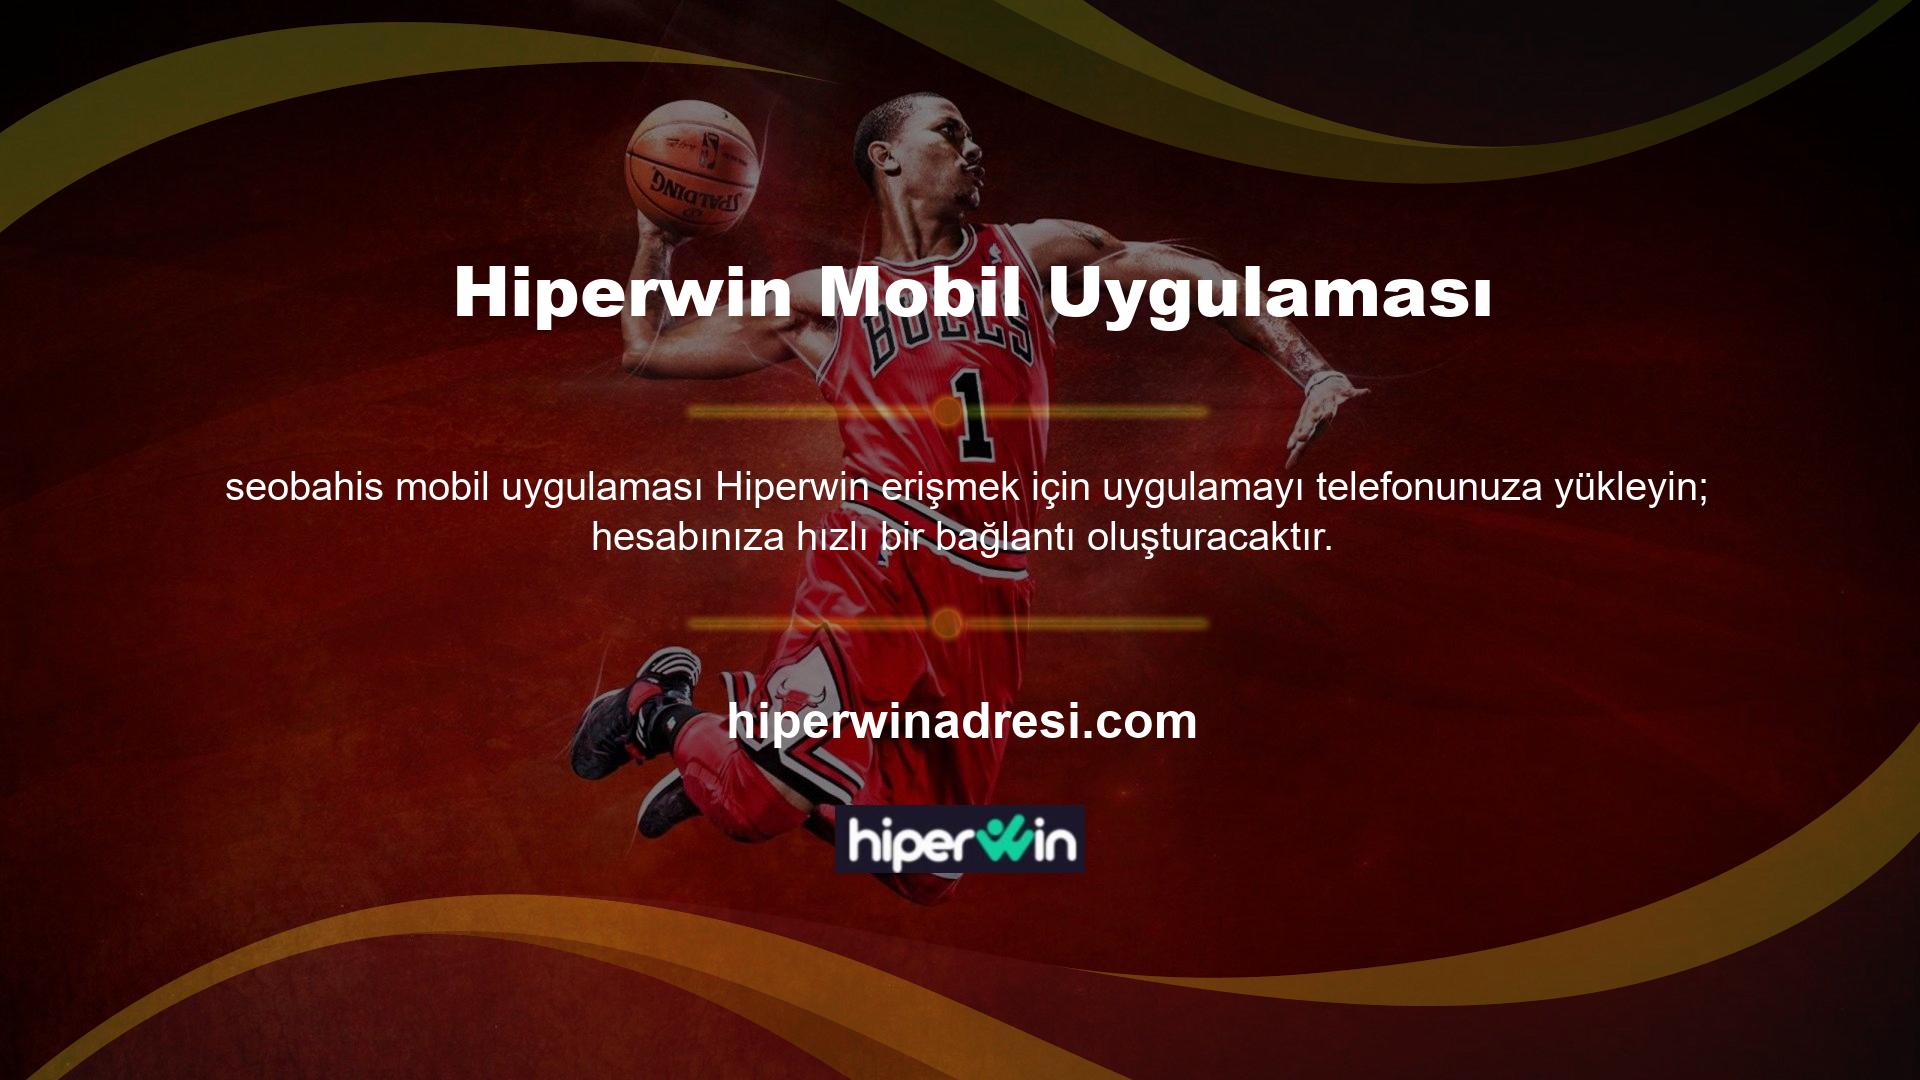 Hemen Hiperwin Mobile üye olmak için bu linke tıklayın